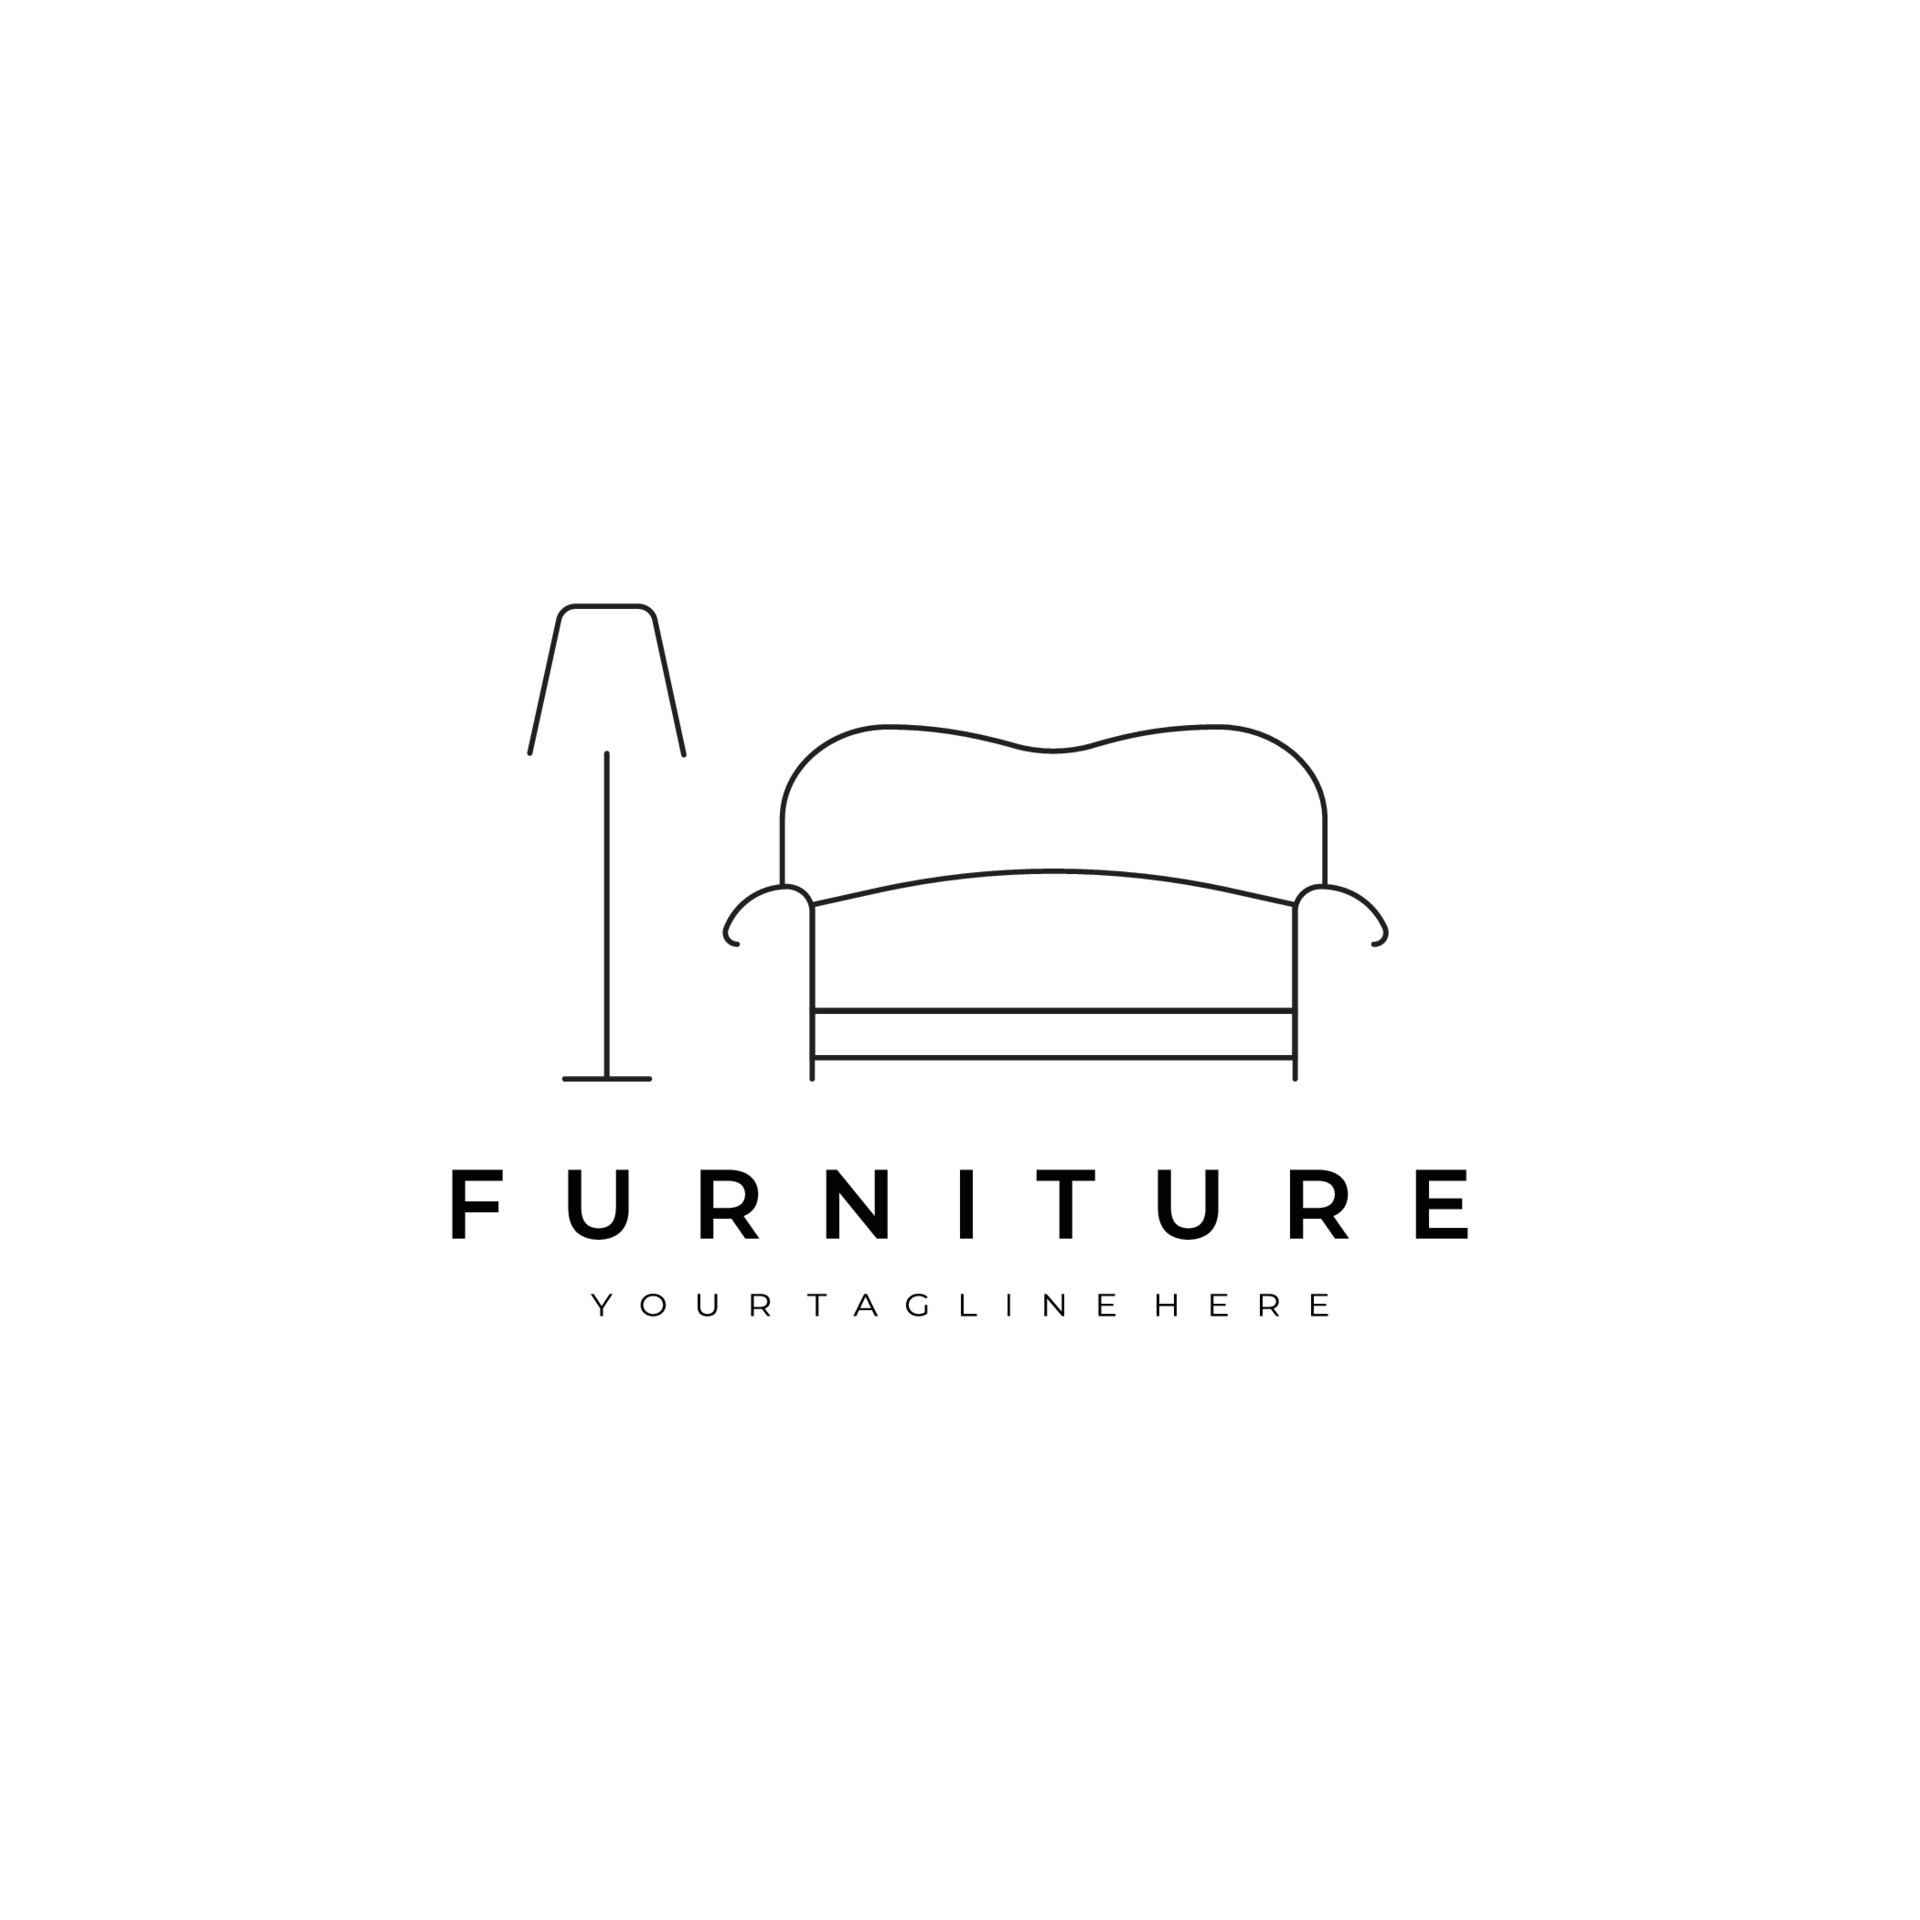 furniture illustration line art vector design logo. nature indoor ...